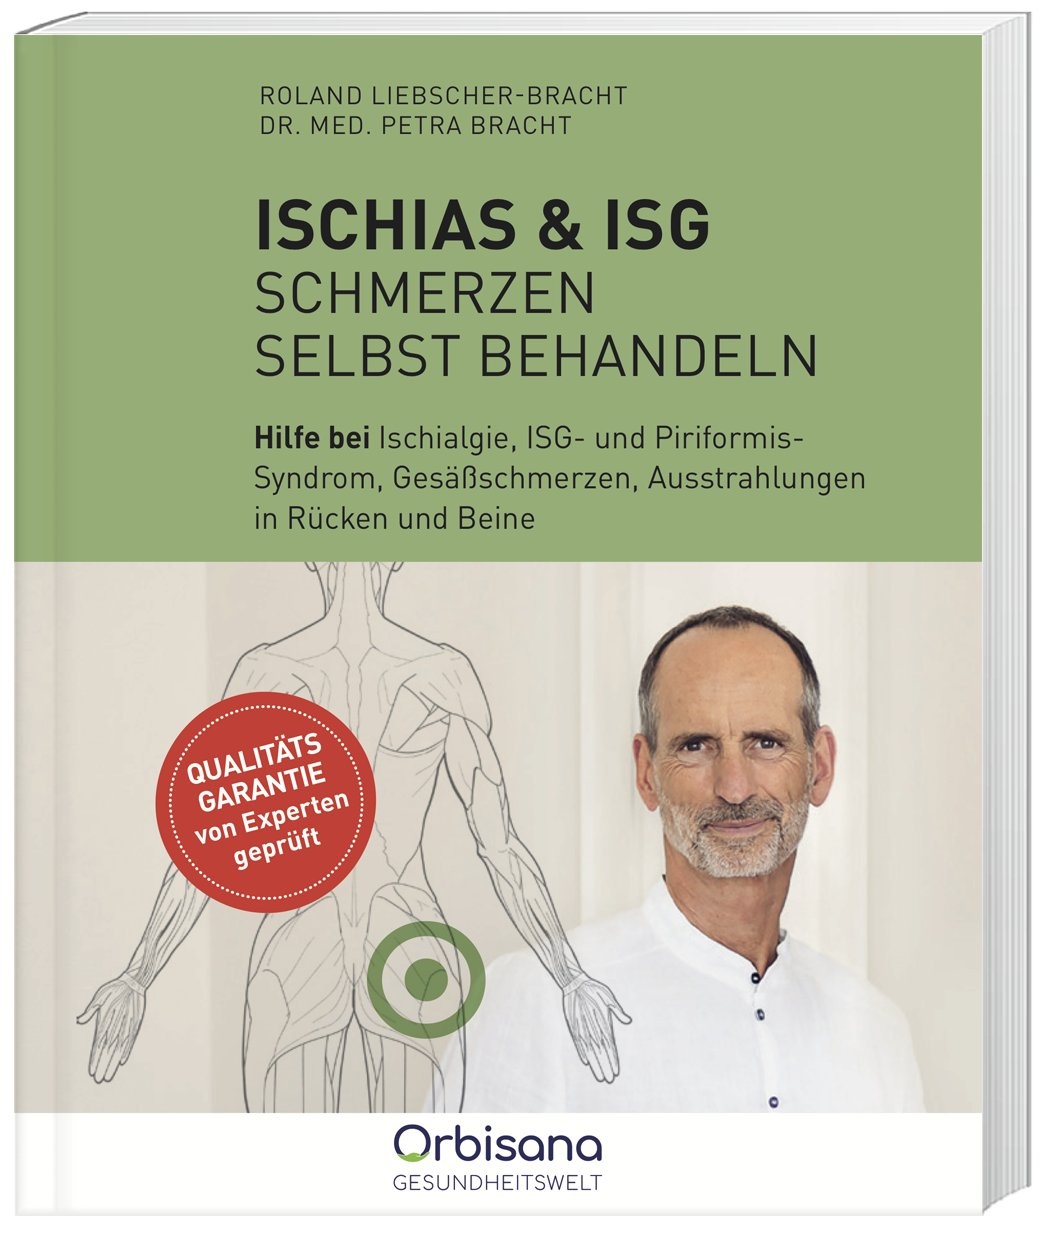 Ischias & Isg-Schmerzen Selbst Behandeln - Roland Liebscher-Bracht  Dr. med. Petra Bracht  Hochwertige Broschur